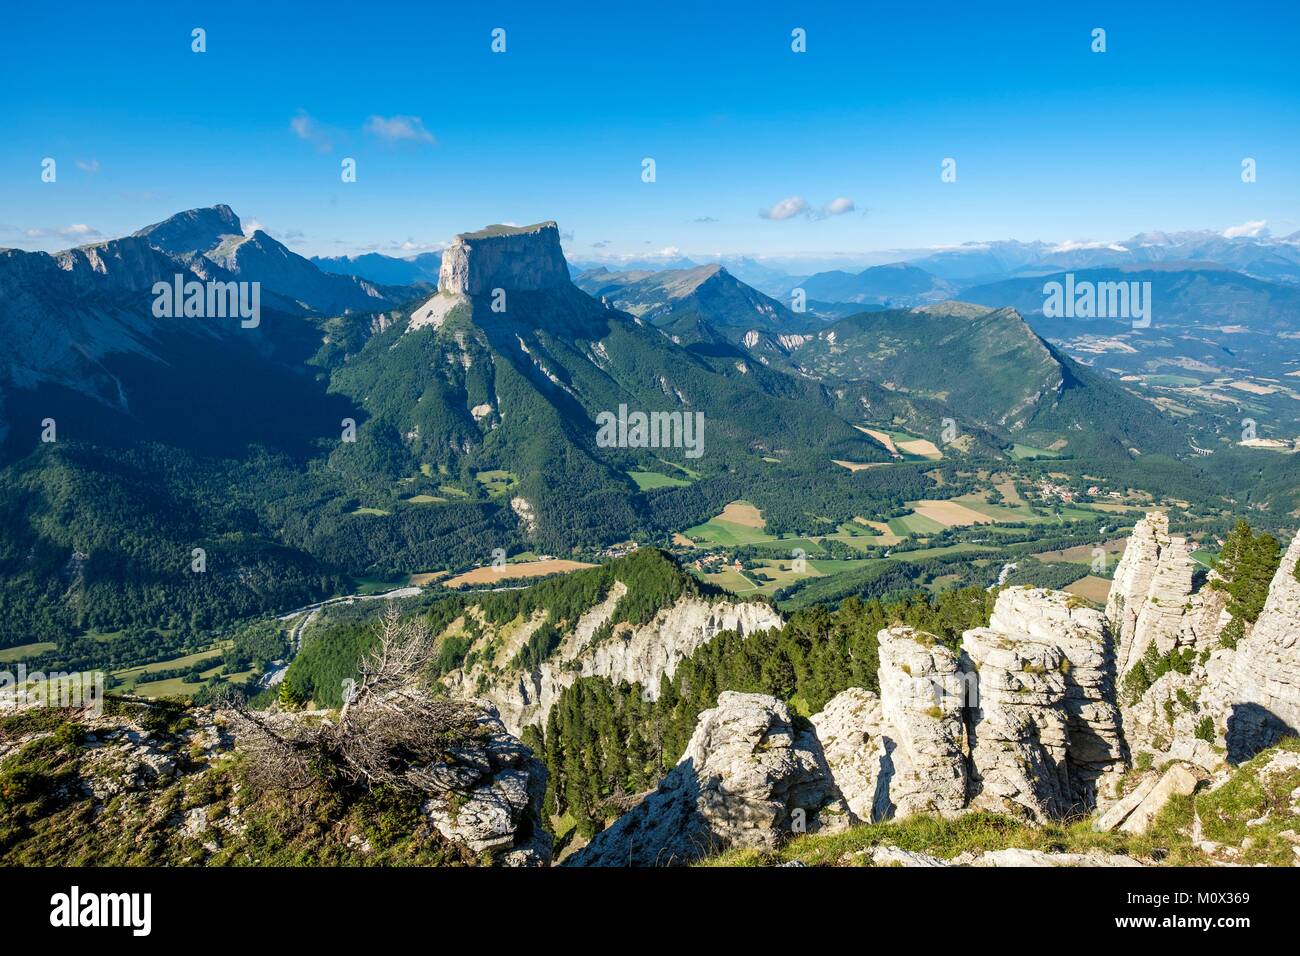 France,Isère,Parc Naturel Régional du Vercors, la réserve naturelle nationale des hauts plateaux du Vercors, Mont Aiguille (alt : 2087 m) et Grand Veymont (alt : 2341 m), point le plus élevé du massif du Vercors,Richardiere valley ci-dessous Banque D'Images